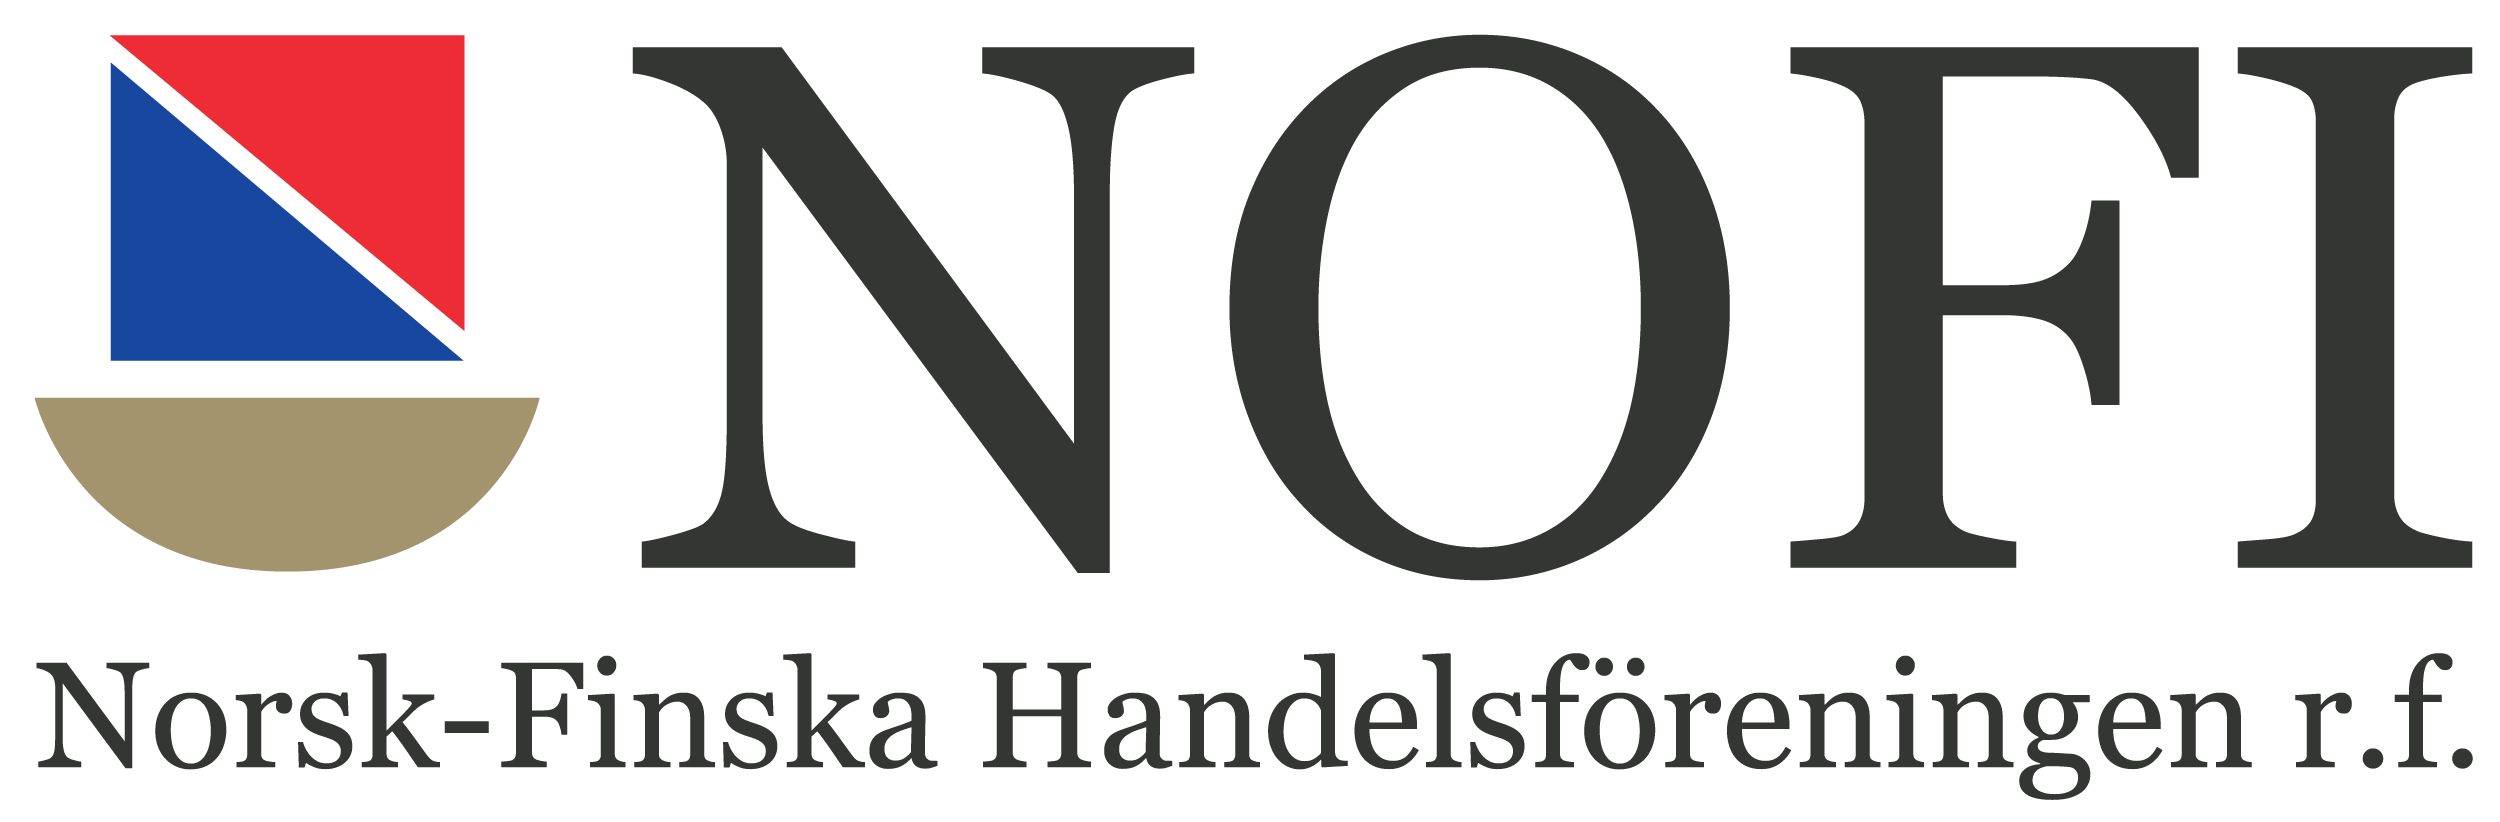 NOFI - Norsk-Finska Handelsförening r.f.